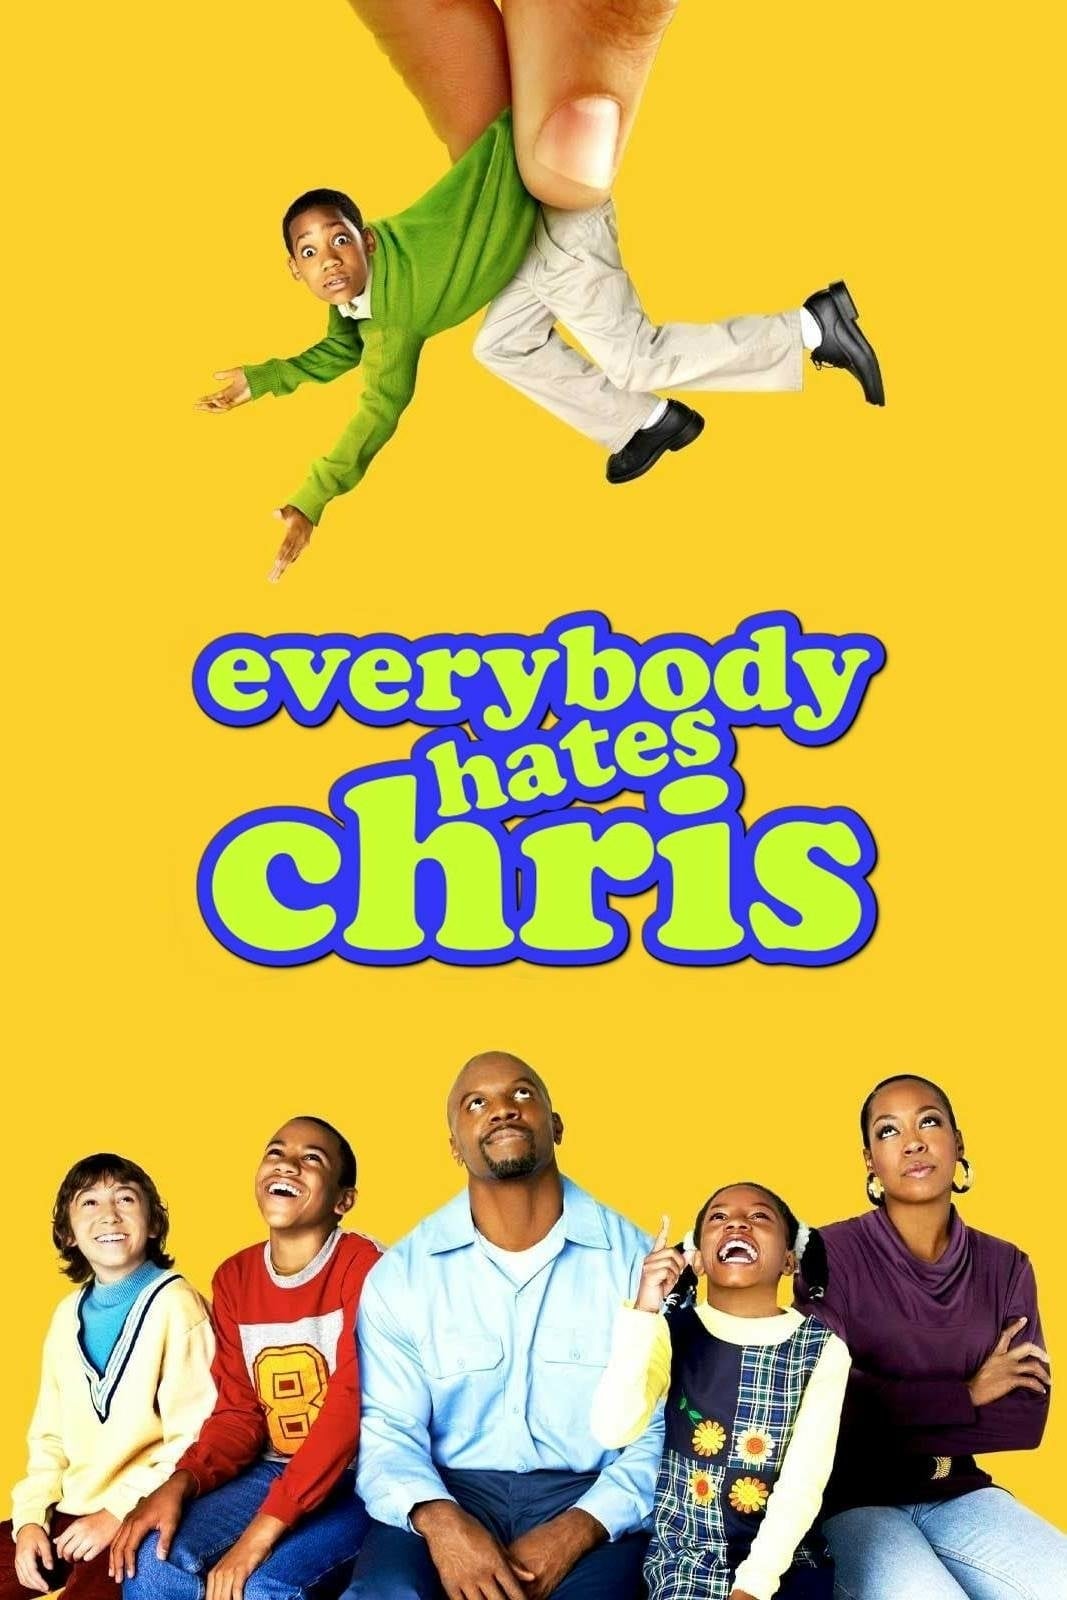 Alle hassen Chris (2005)